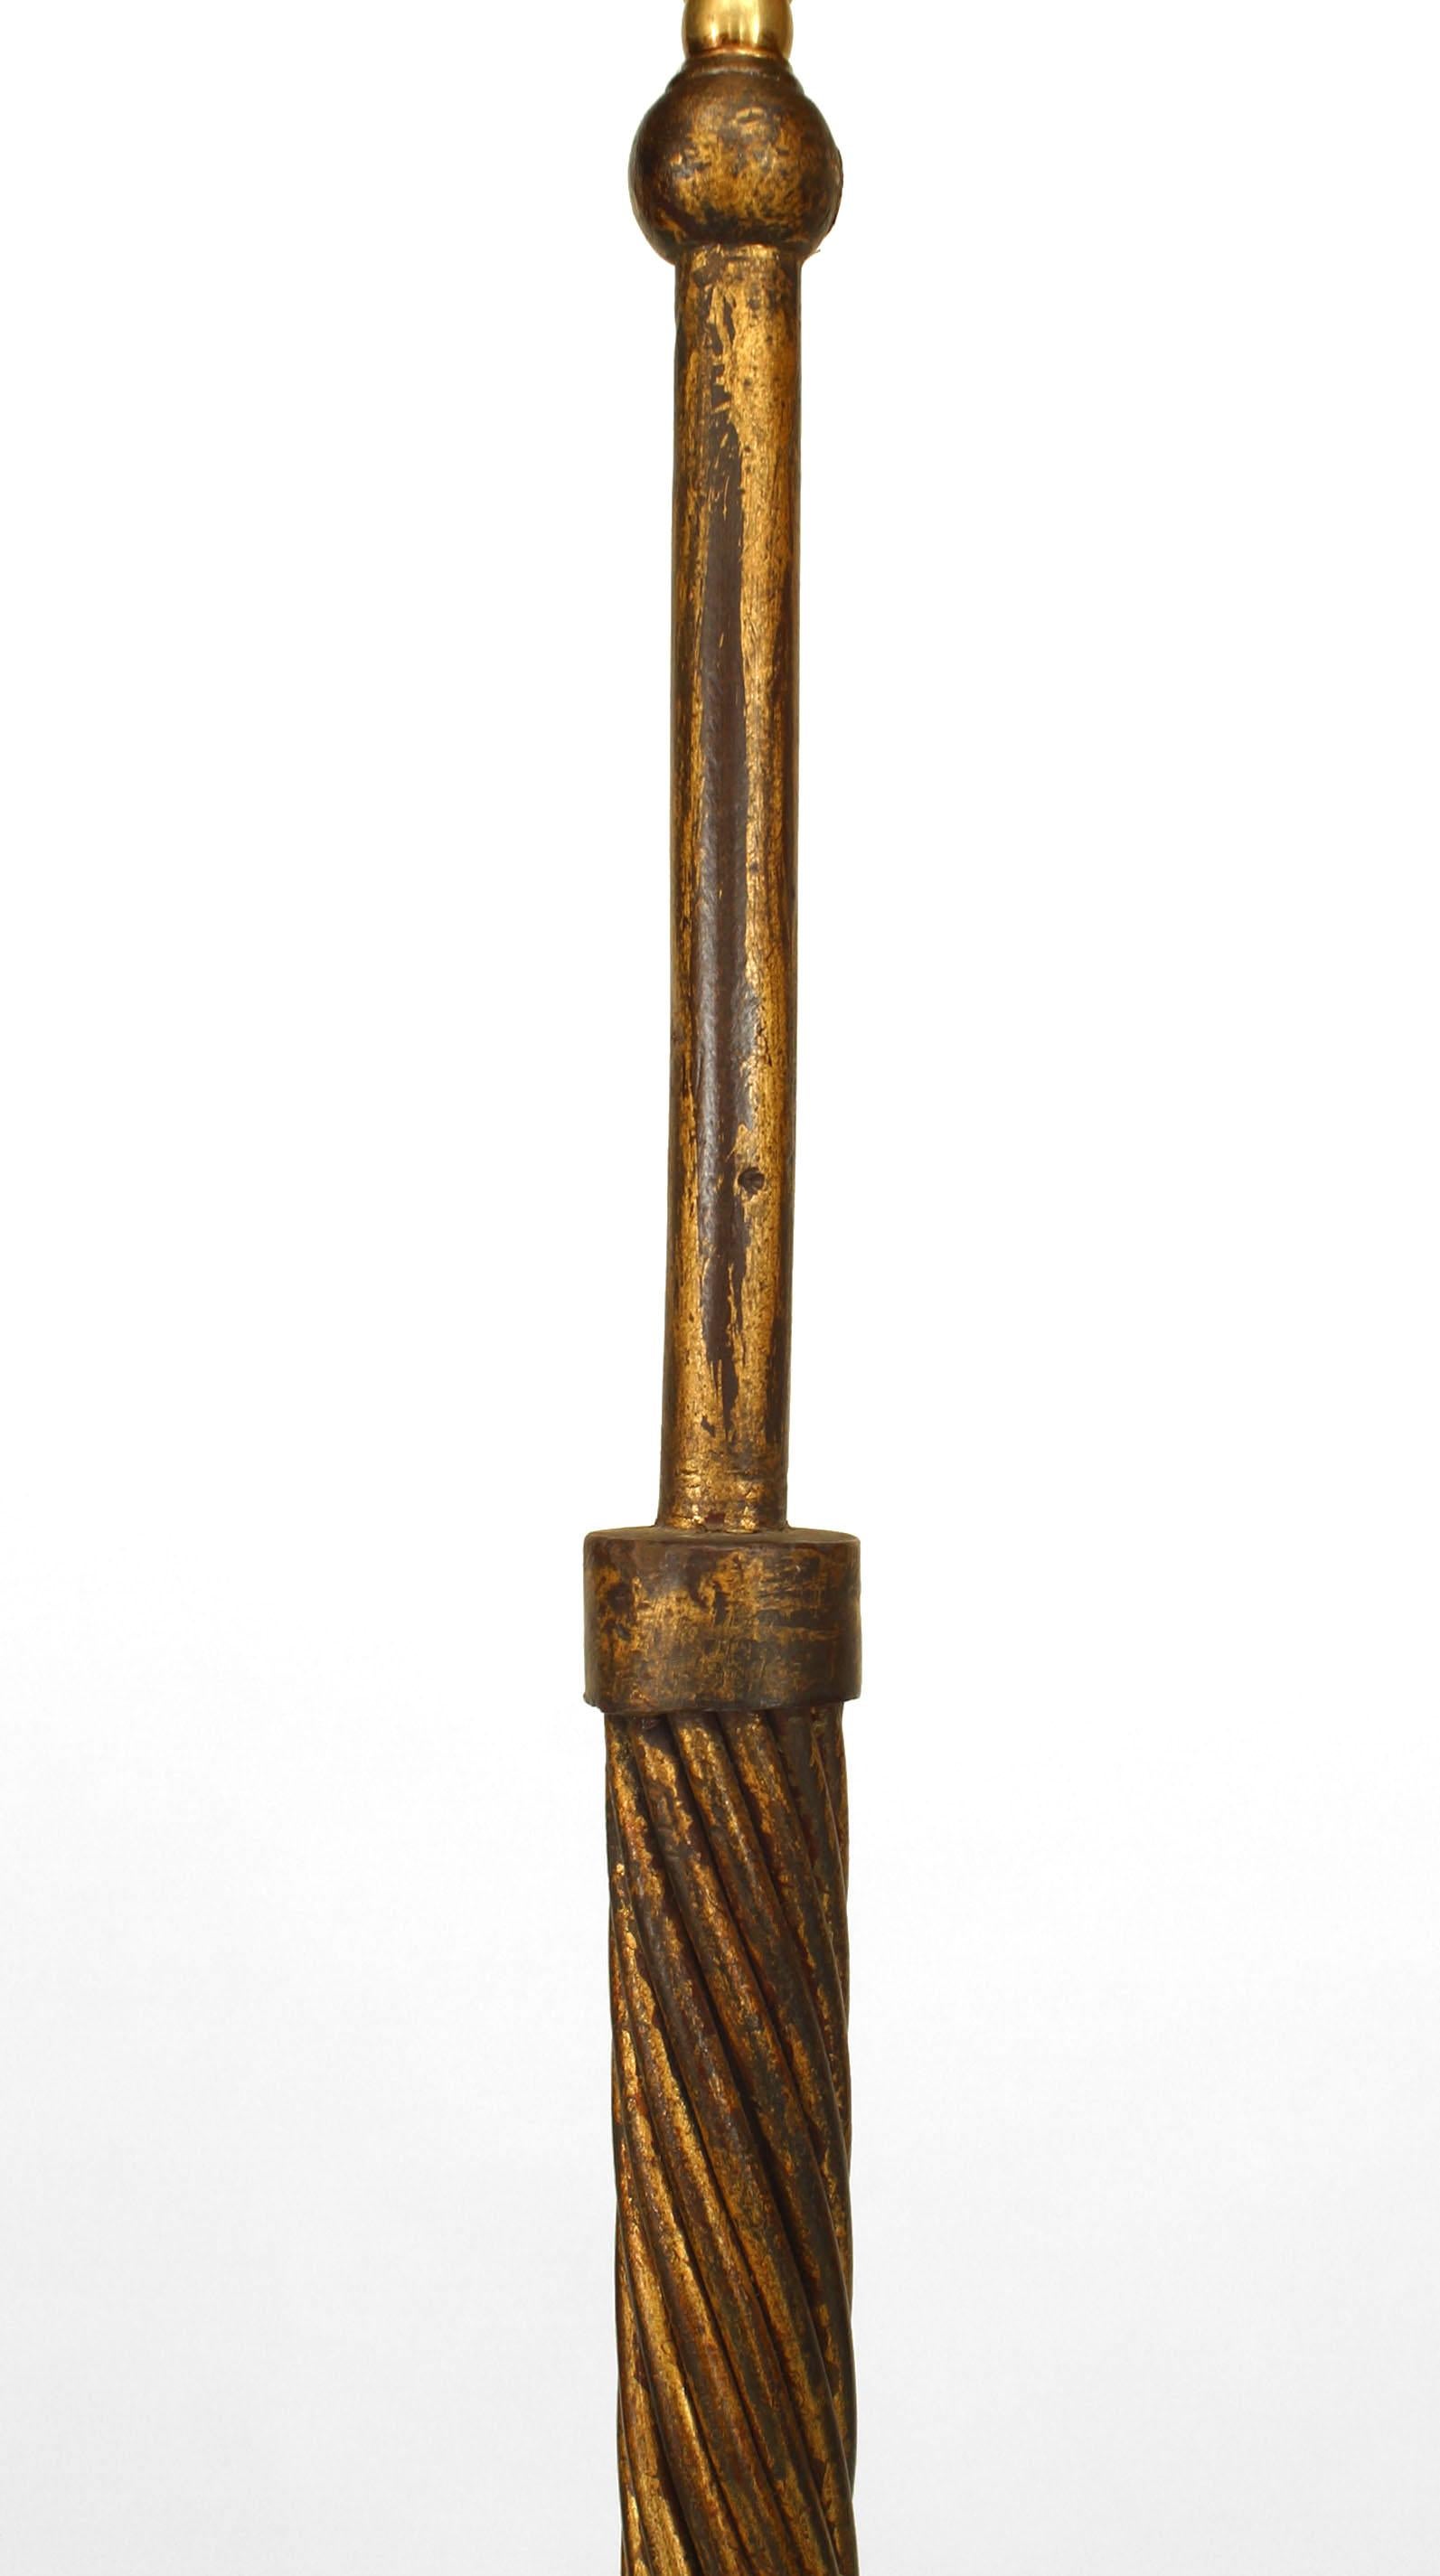 Lampadaire colonne en fer doré des années 1940 à motif de corde torsadée reposant sur une base à trois pieds (dans le style de POILLERAT).
